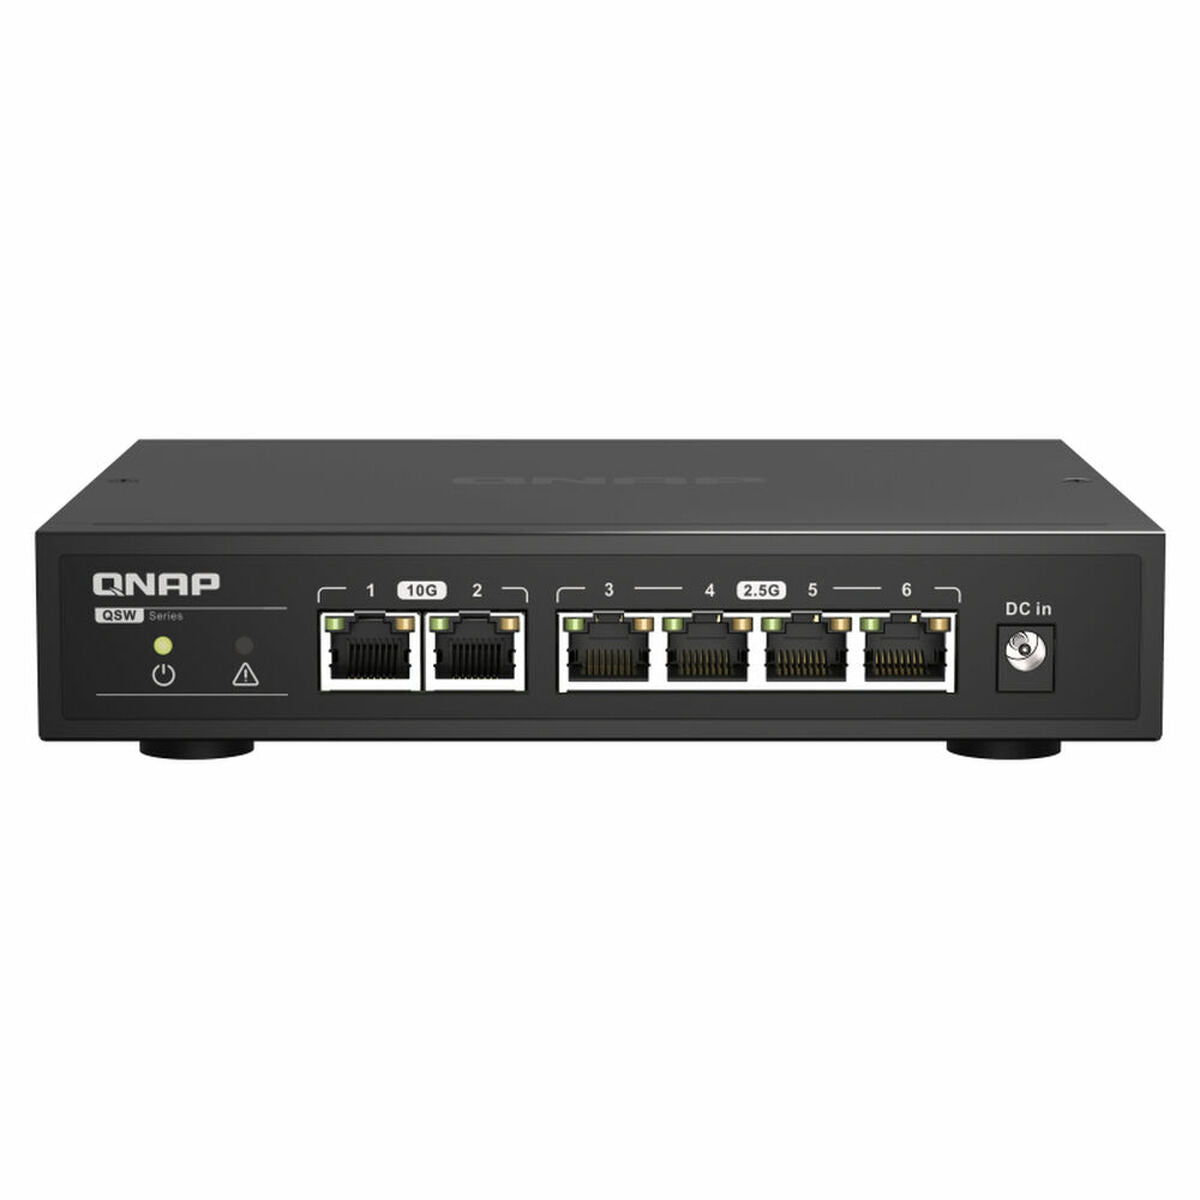 Router Qnap QSW-2104-2T          Black 10 Gbit/s